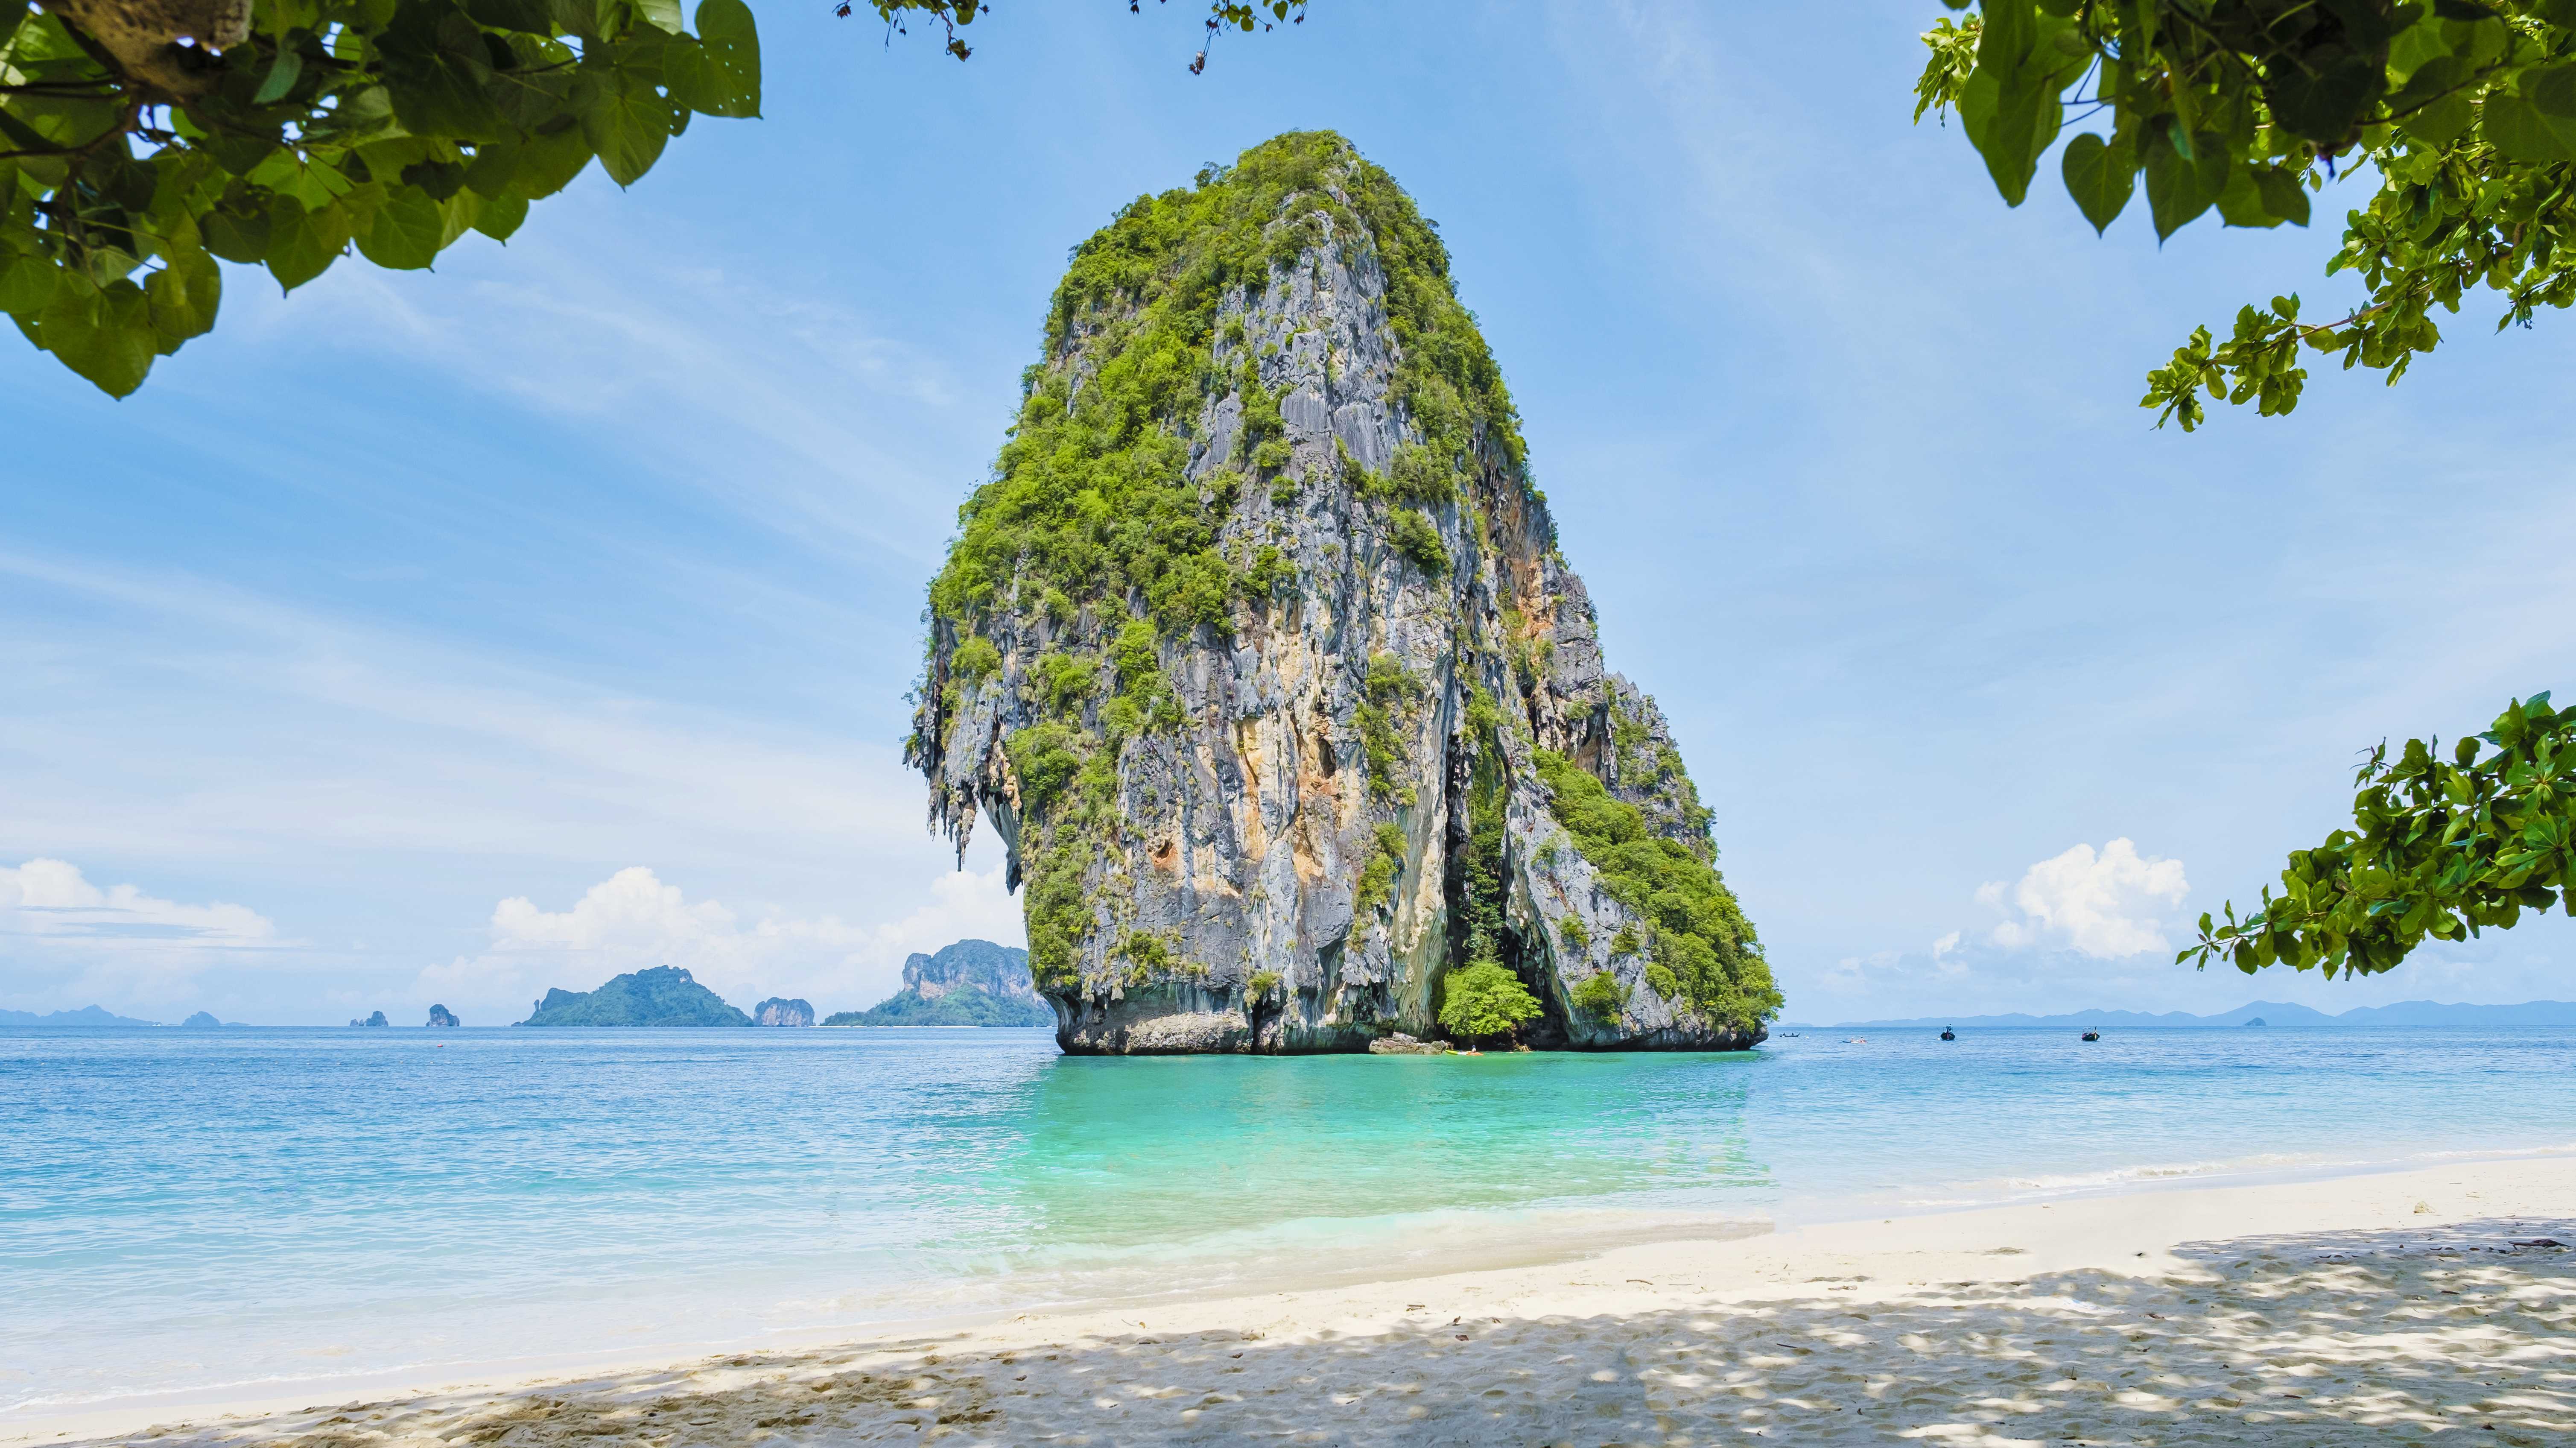 Railay Beach - Krabi's Best Attractions